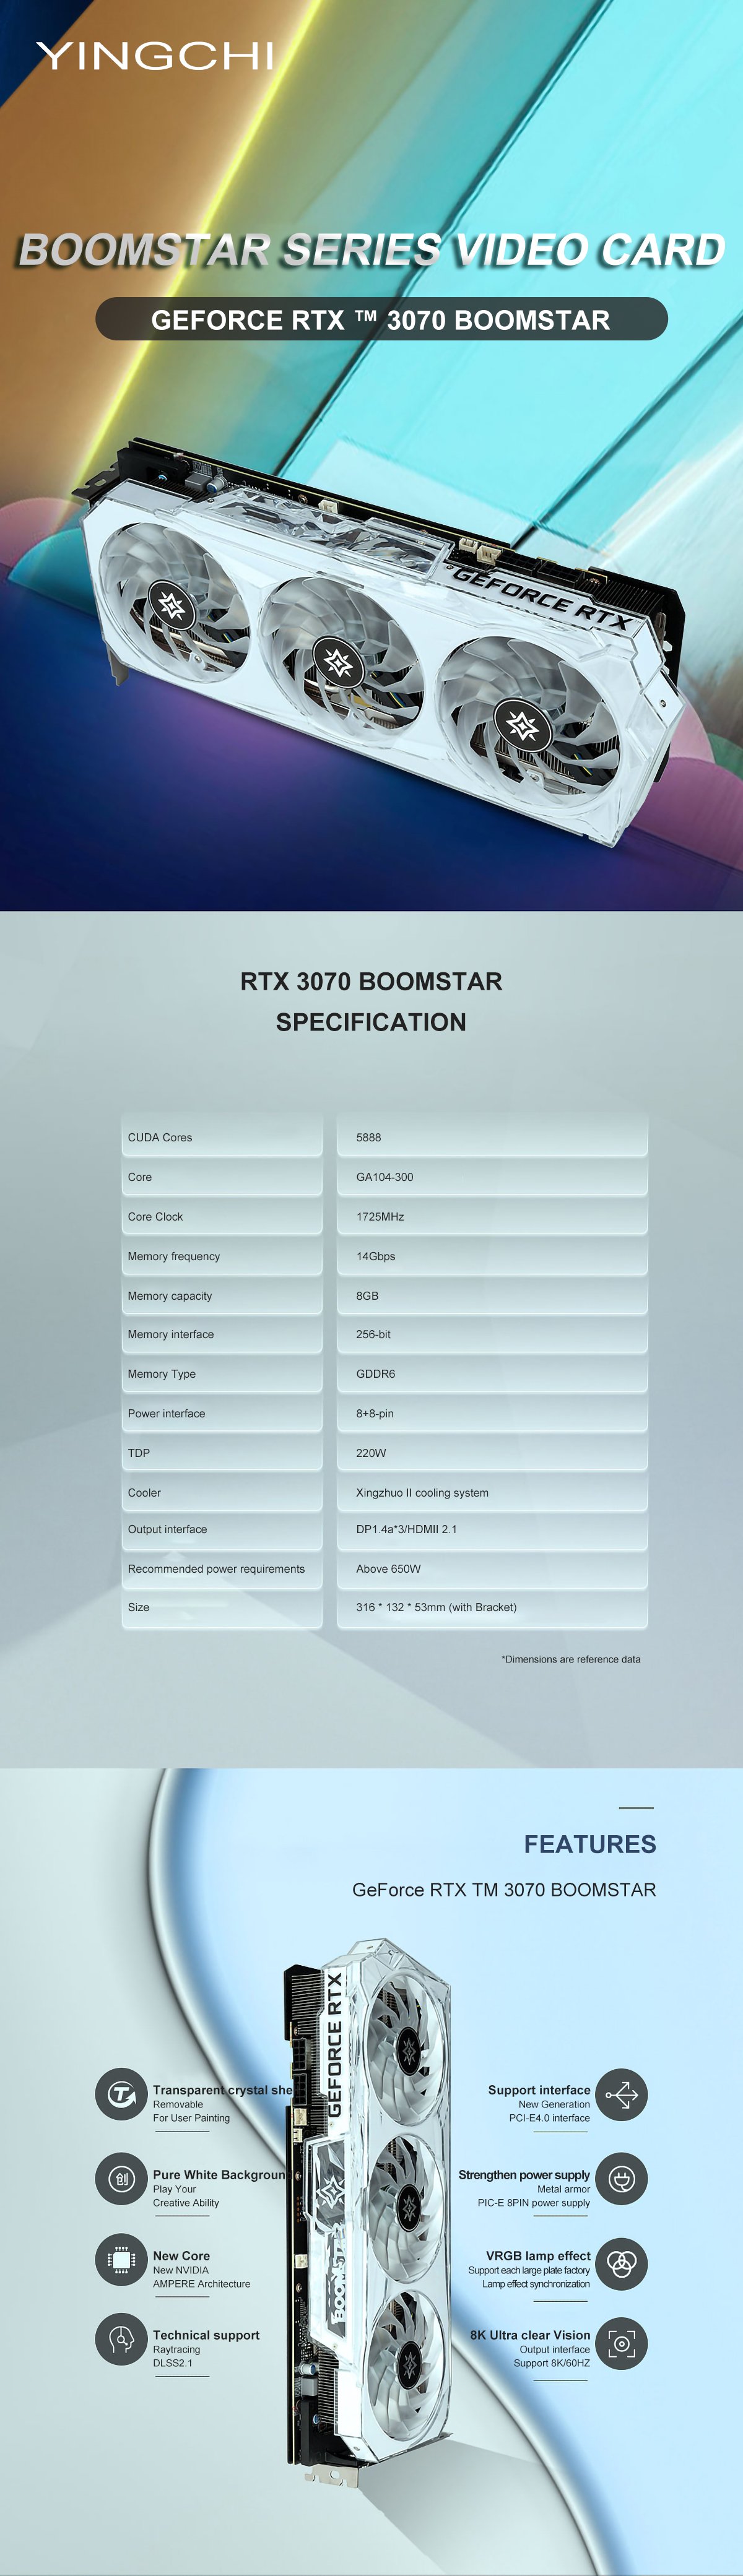 GALAX RTX 4080 Boomstar Specs